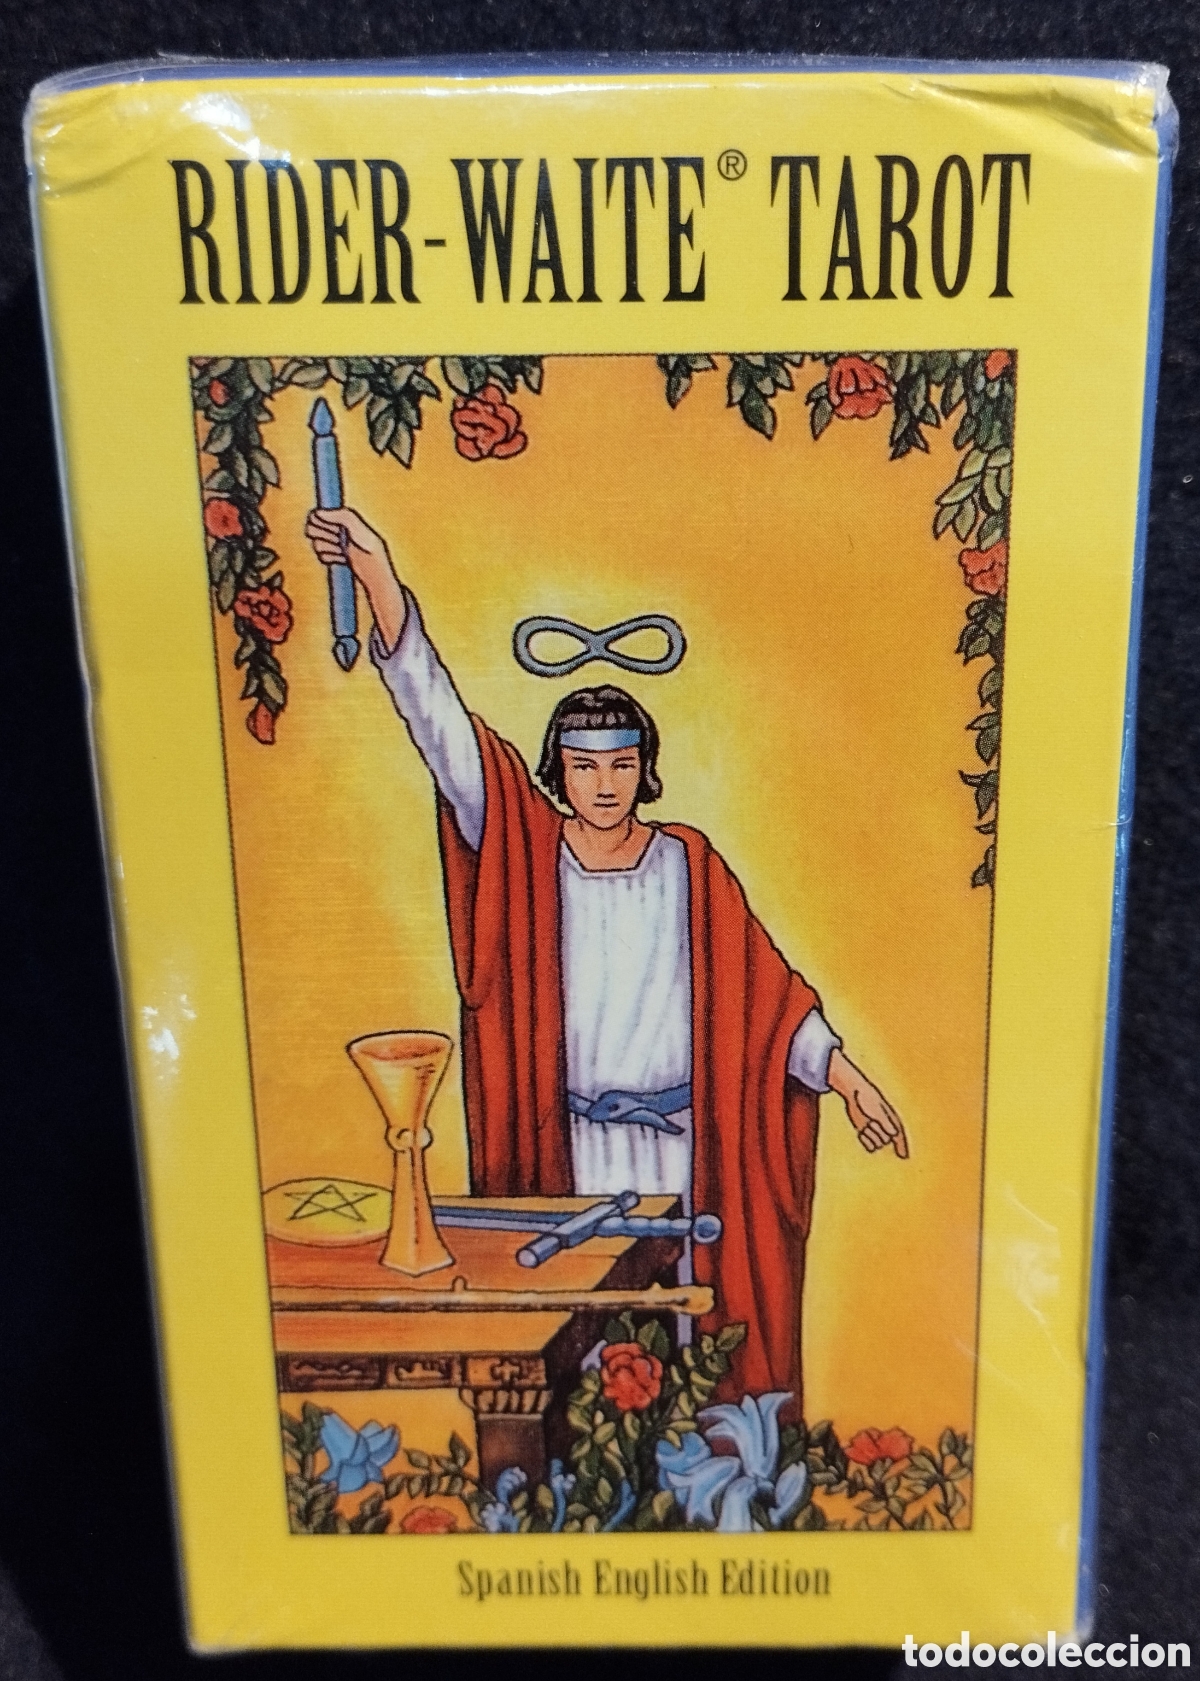 rider-waite tarot - spanish english edition - p - Compra venta en  todocoleccion